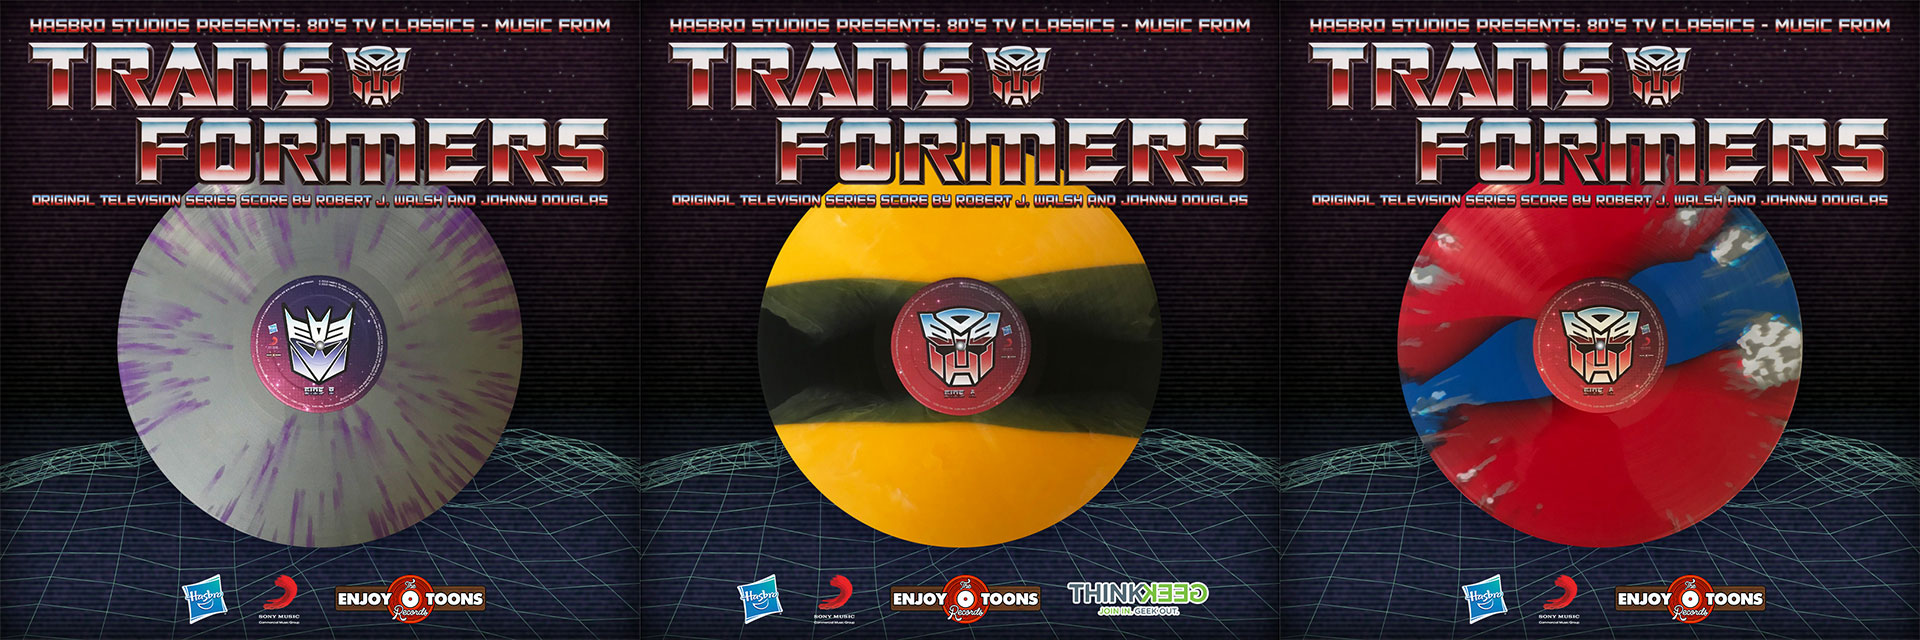 Transformers G1 Score Vinyl Album